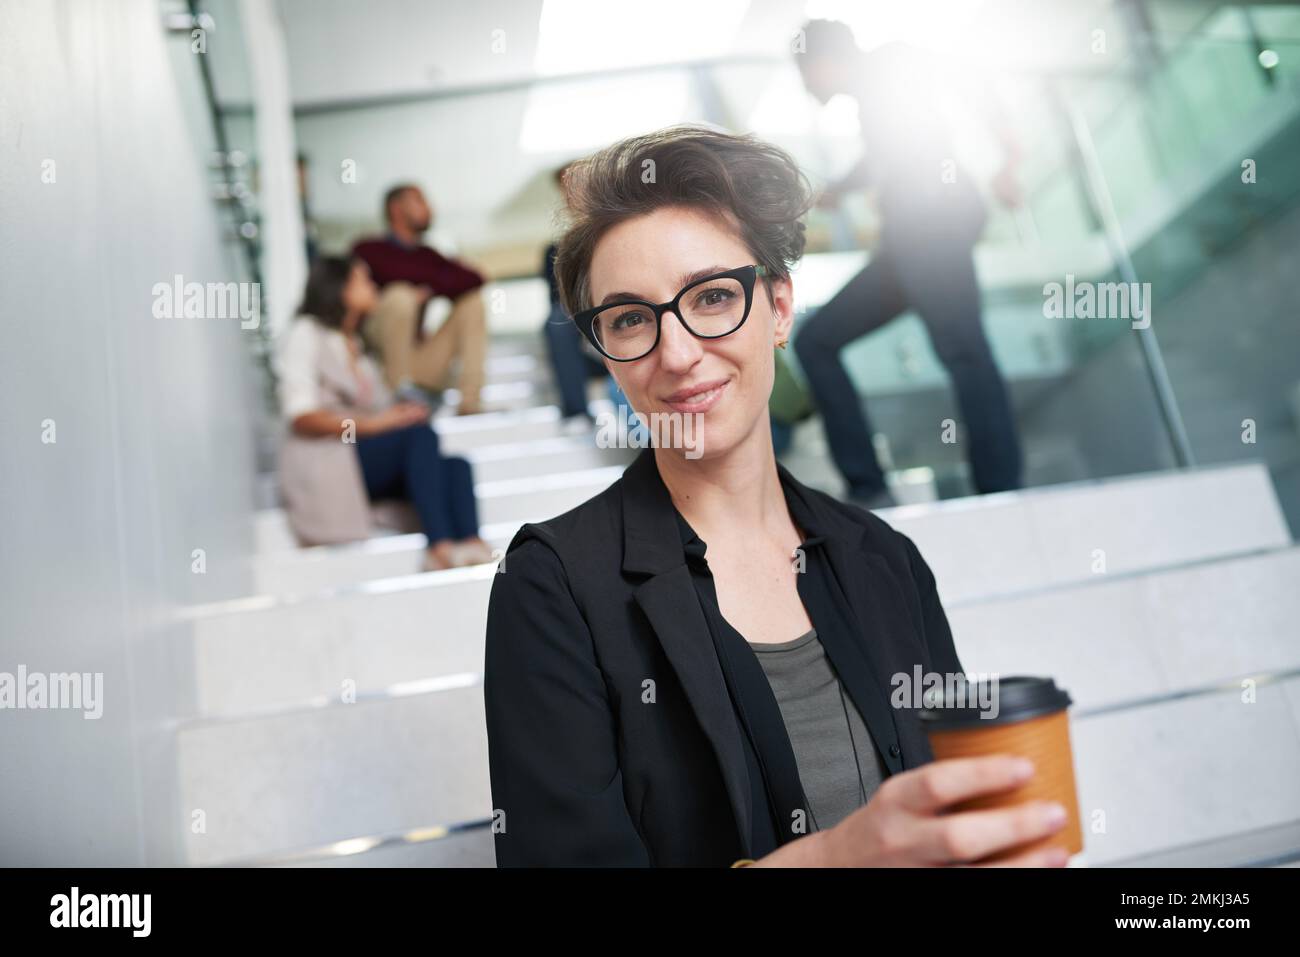 Sie brauchen die richtige Einstellung, um erfolgreich zu sein. Porträt eines jungen Kreativen, der auf einer Treppe in einem modernen Büro mit Kollegen im Hintergrund sitzt. Stockfoto